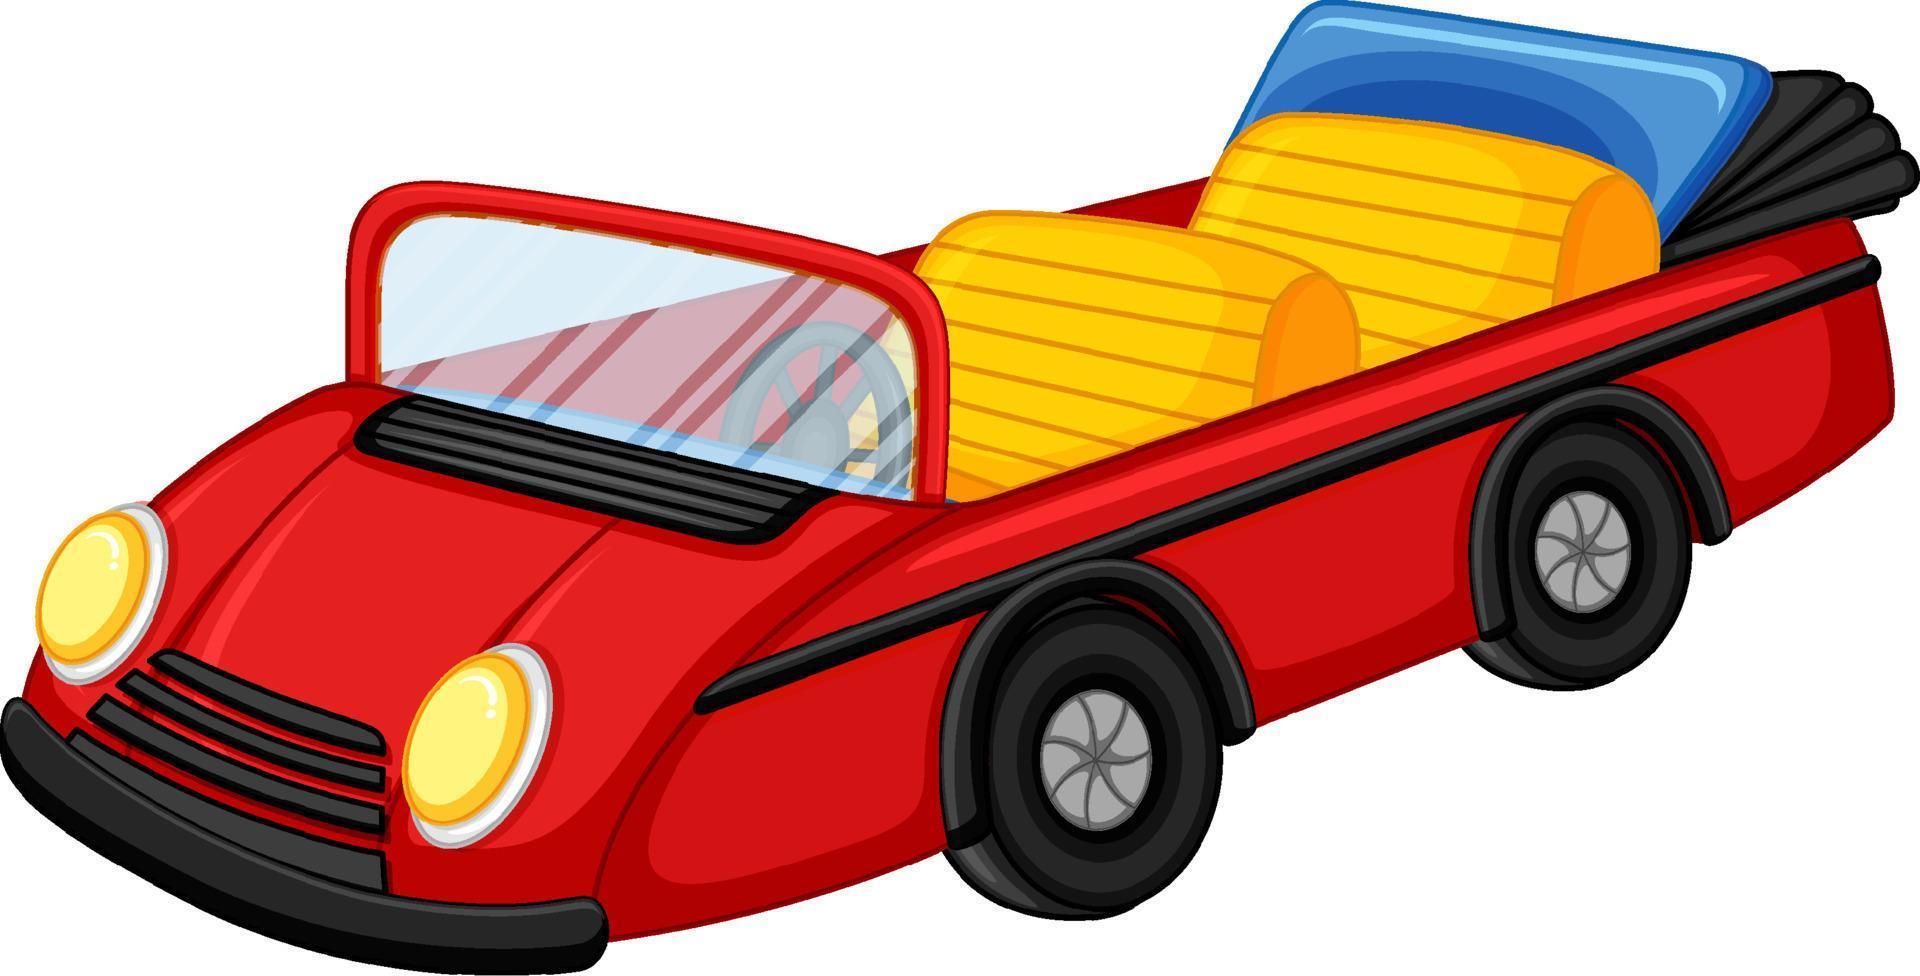 rode vintage converteerbare auto in cartoonstijl vector